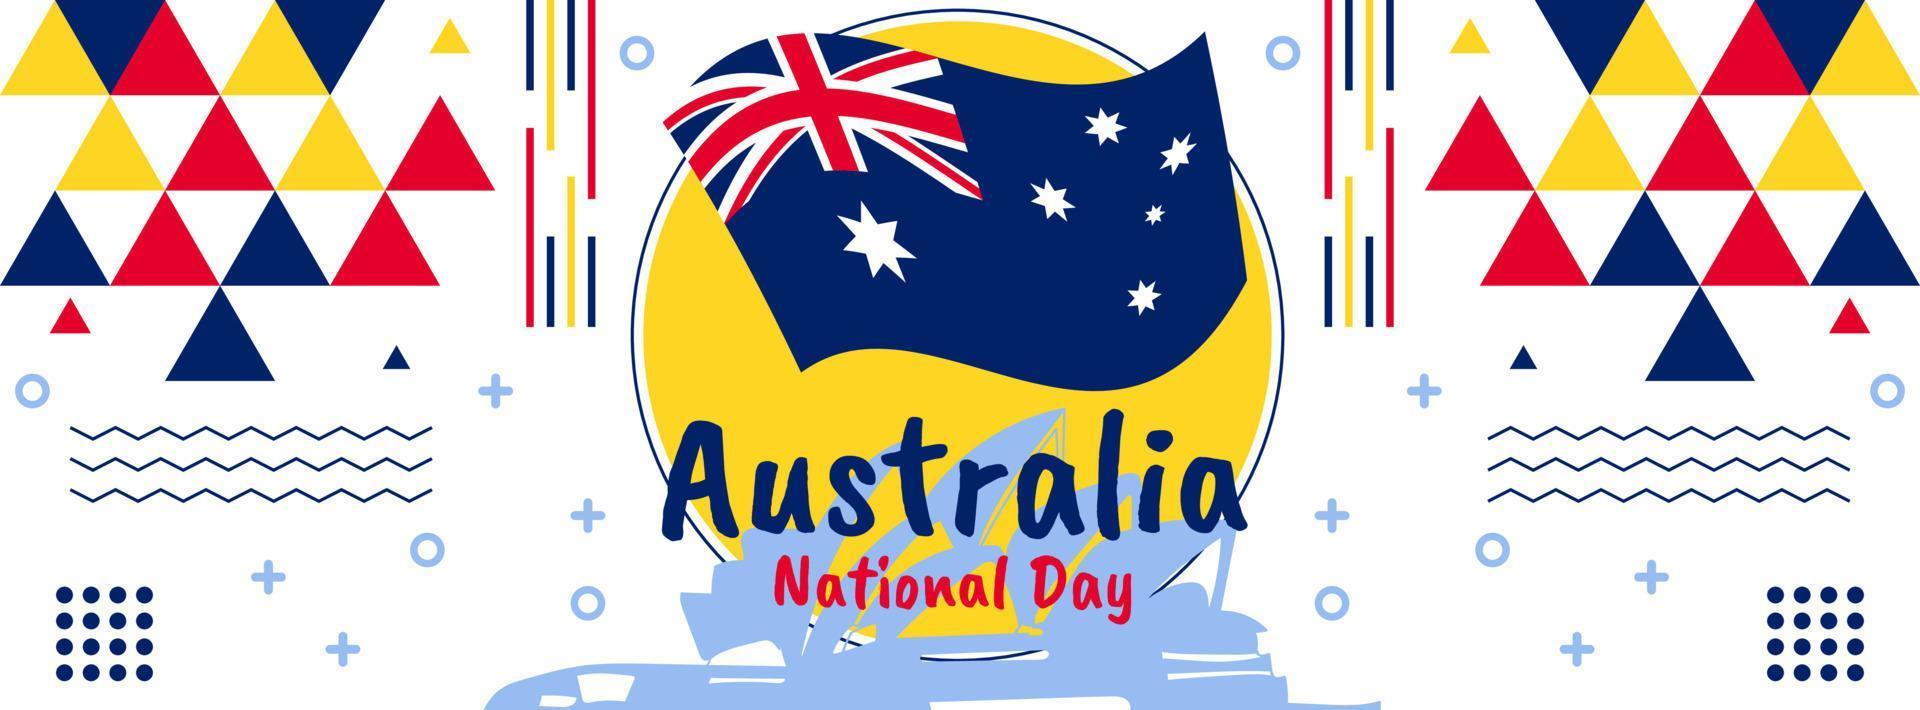 Australien dag baner design för 26: e av januari. abstrakt geometrisk baner för de nationell dag av Australien. australier flagga tema med sydney landmärken bakgrund. vektor